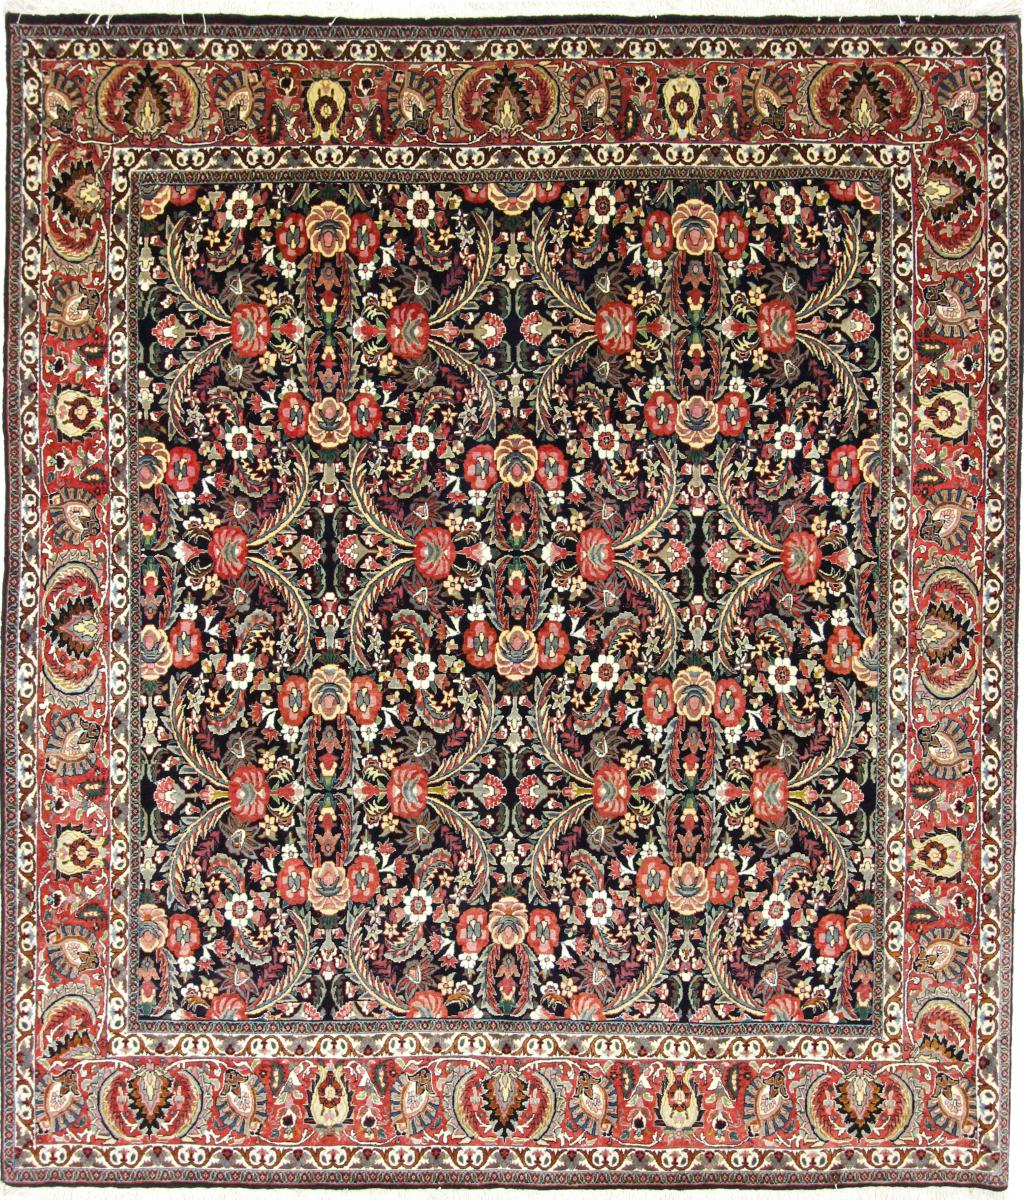  ペルシャ絨毯 ビジャー 247x210 247x210,  ペルシャ絨毯 手織り